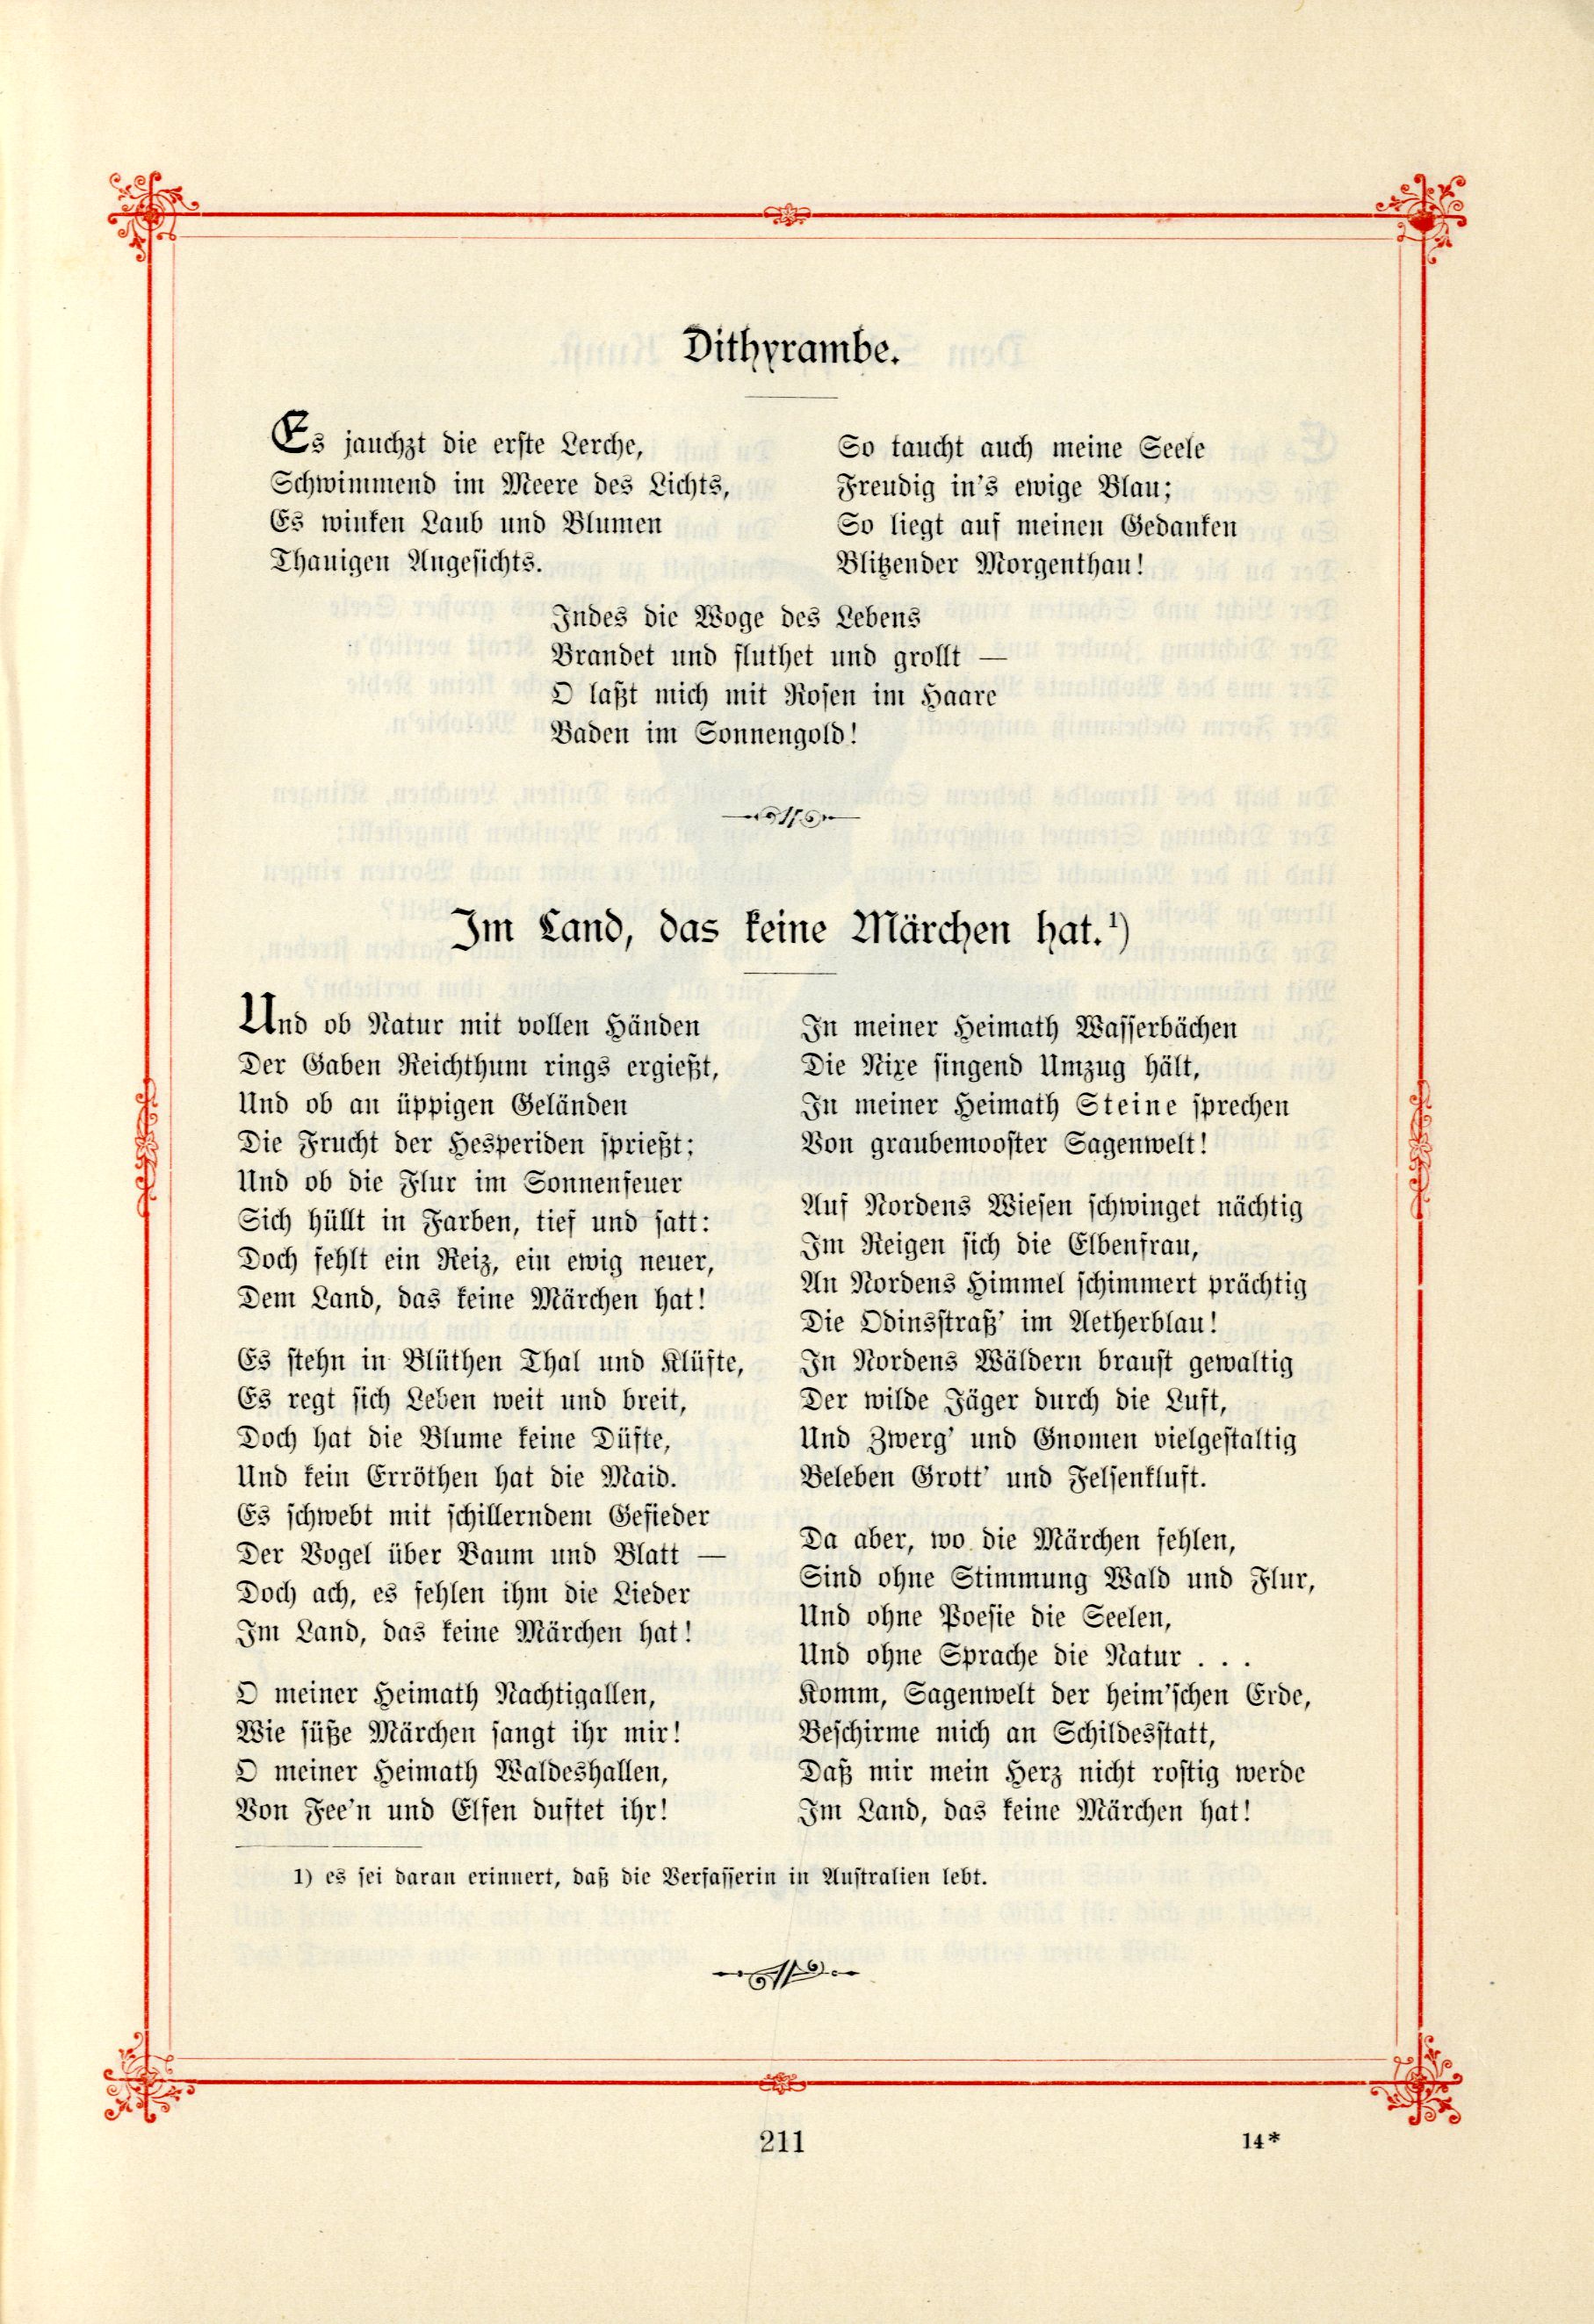 Das Baltische Dichterbuch (1895) | 257. (211) Main body of text